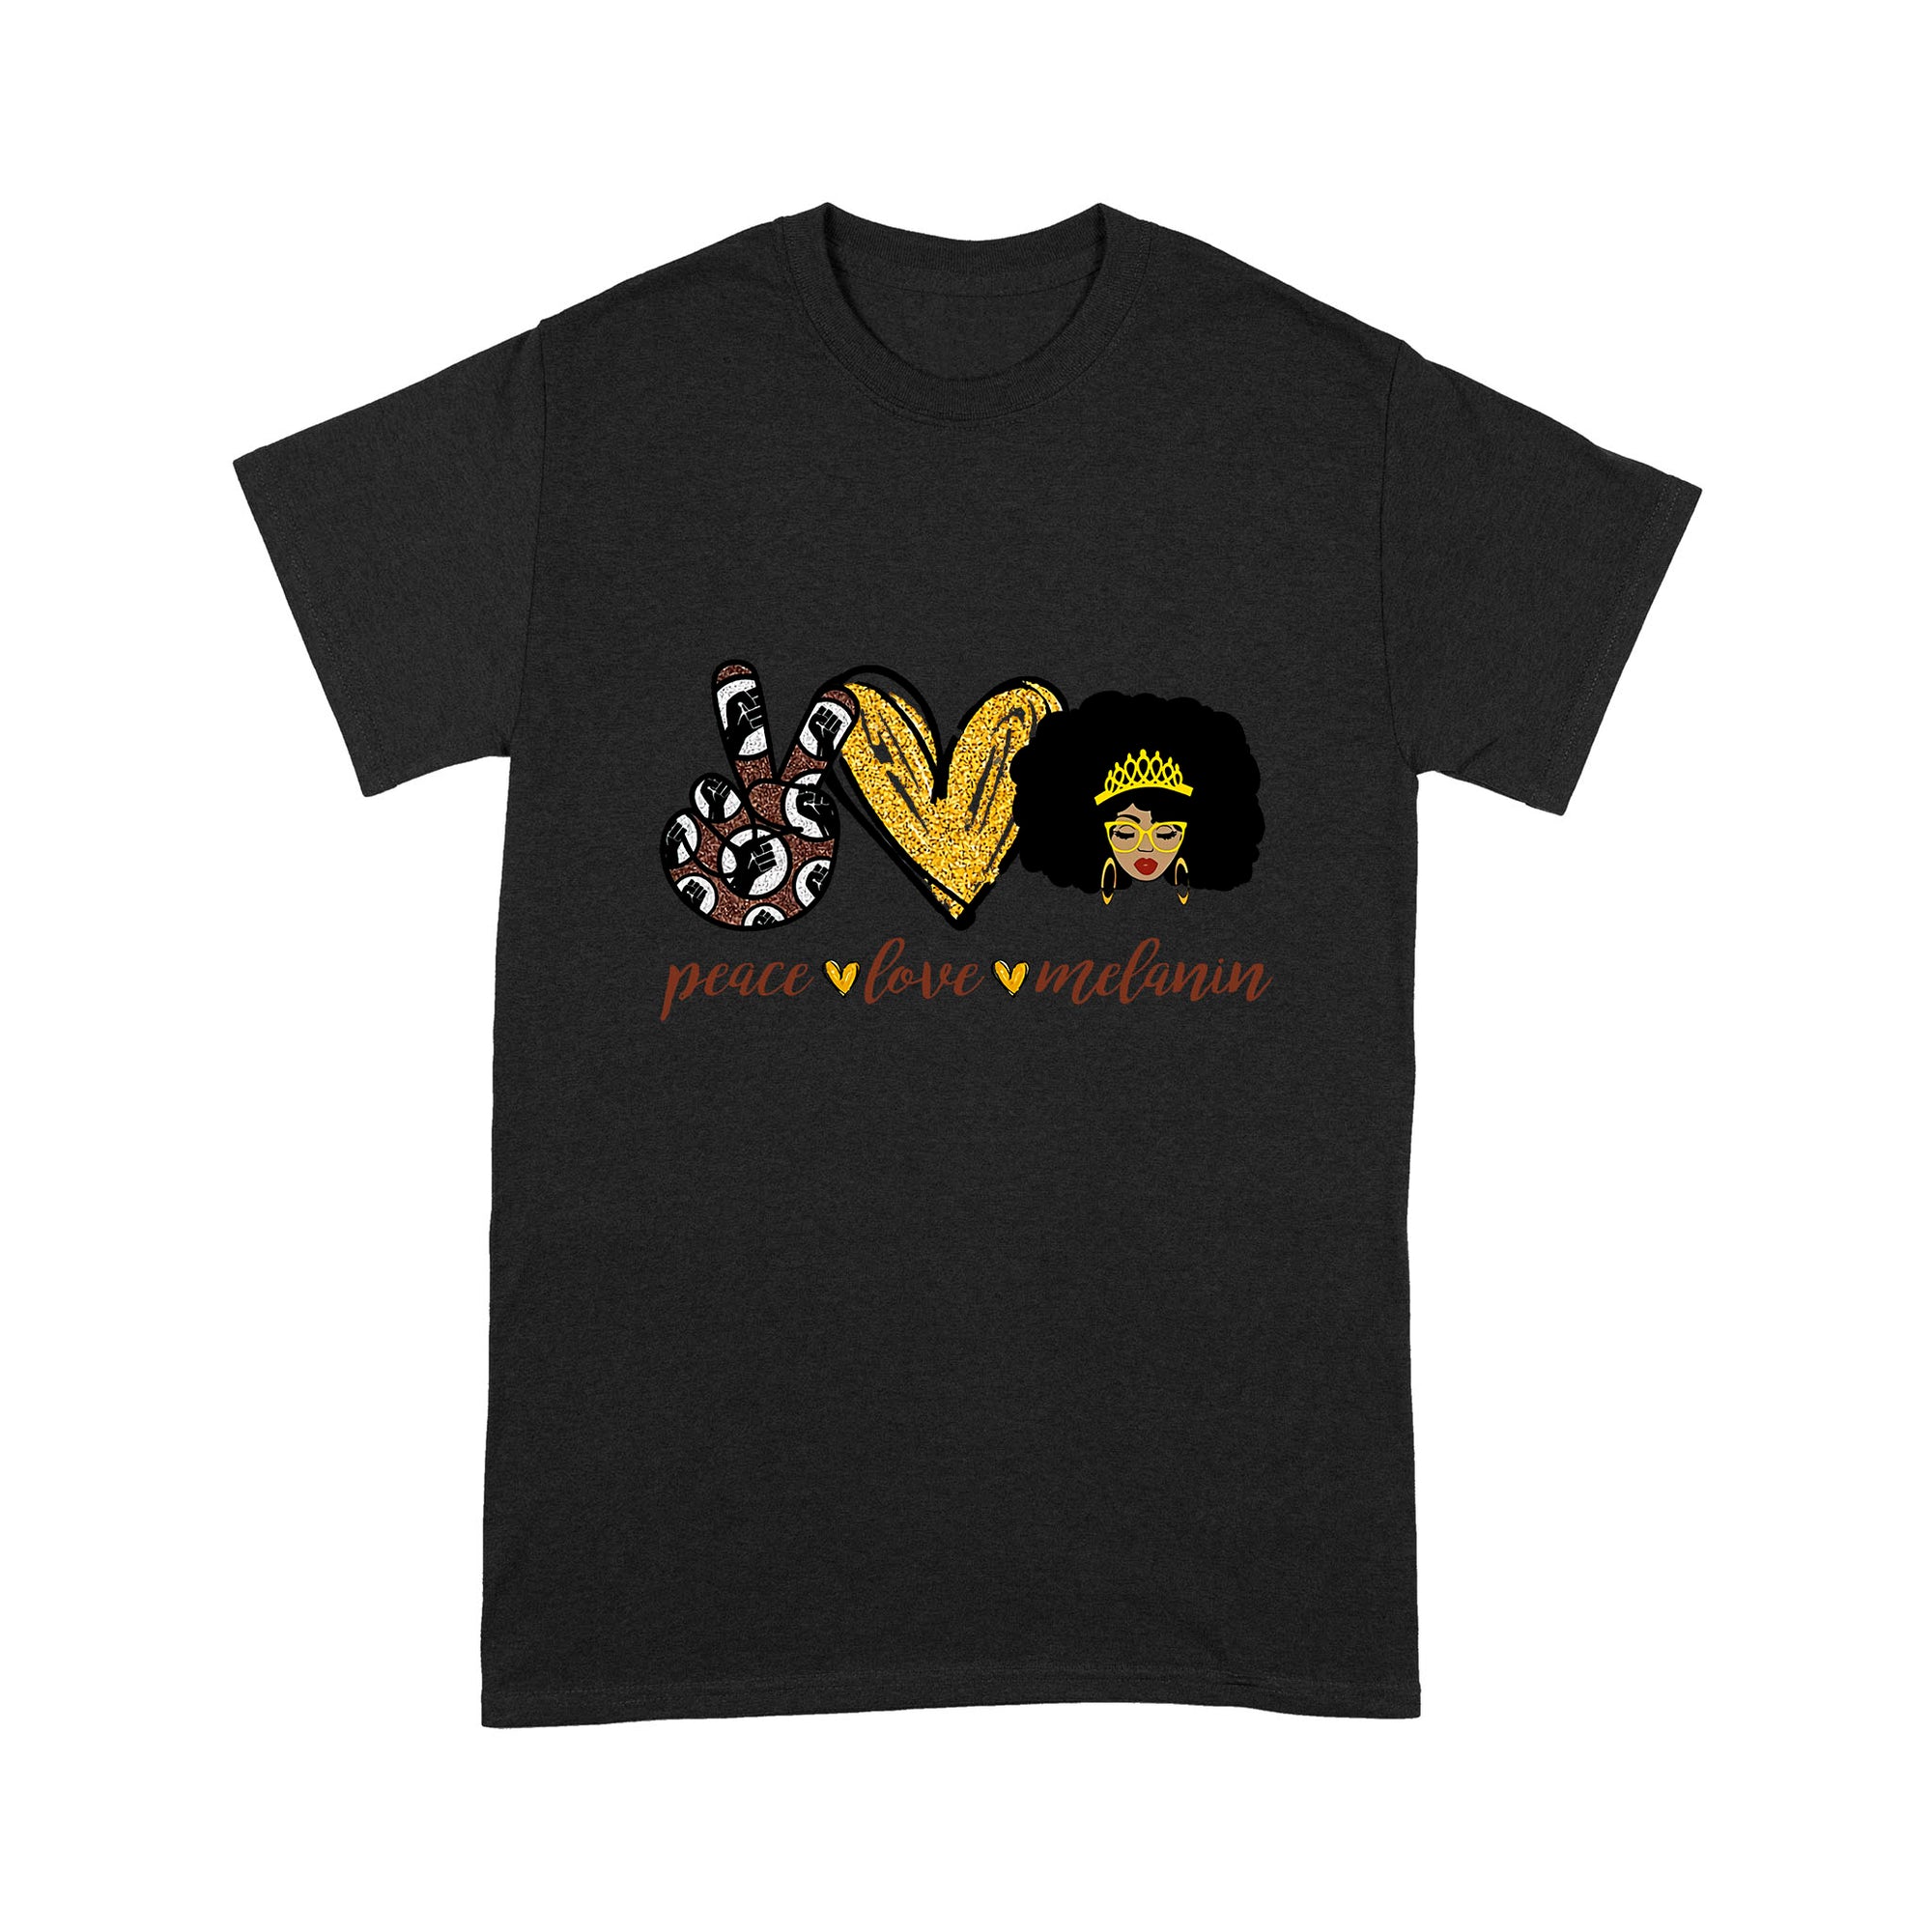 Peace Love Melanin Black Woman T-shirt MEI